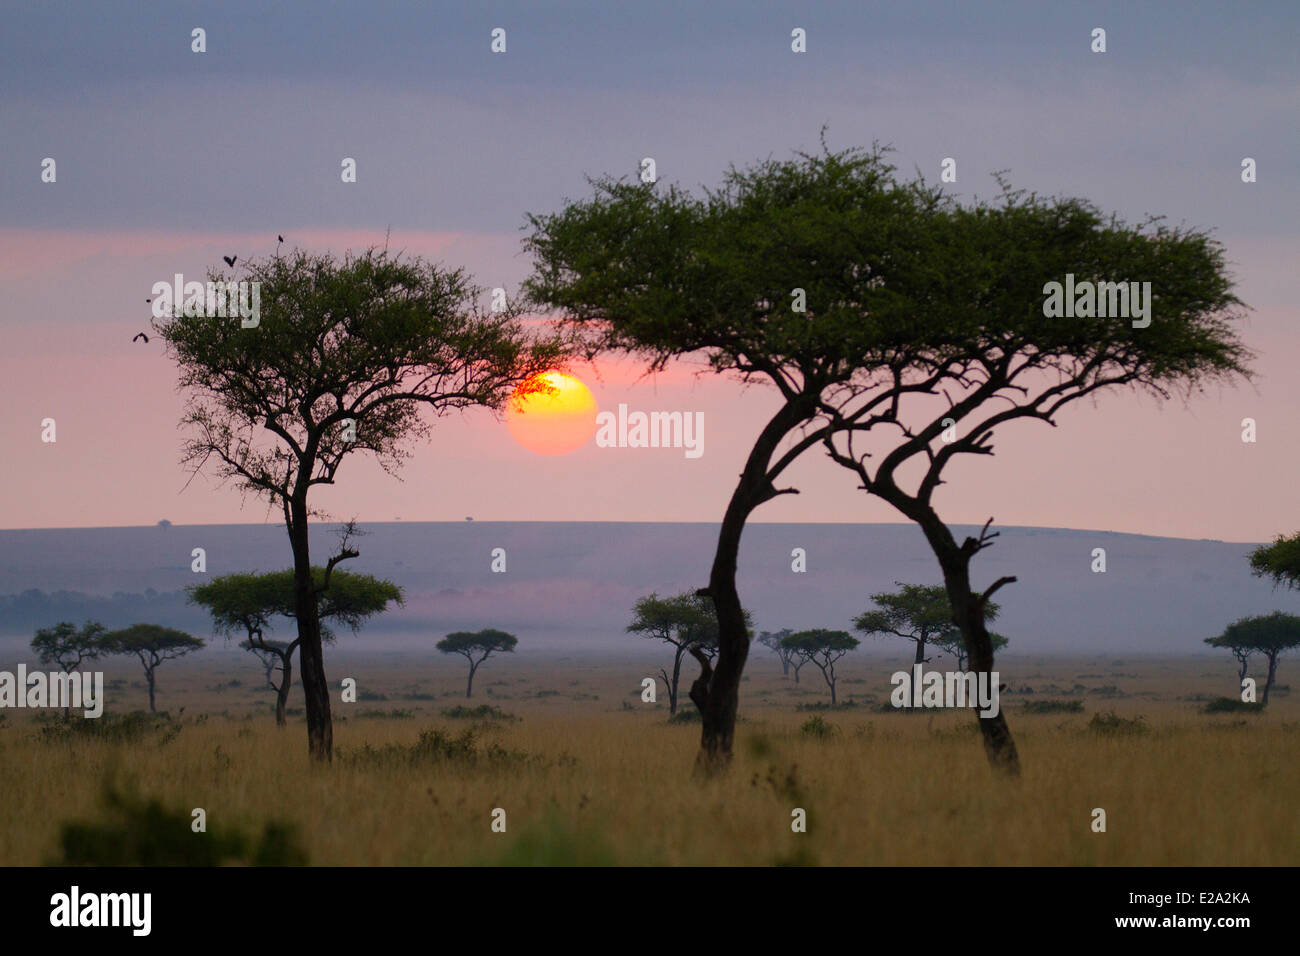 Kenia, Masai Mara National Reserve, Hebel de soleil Stockfoto